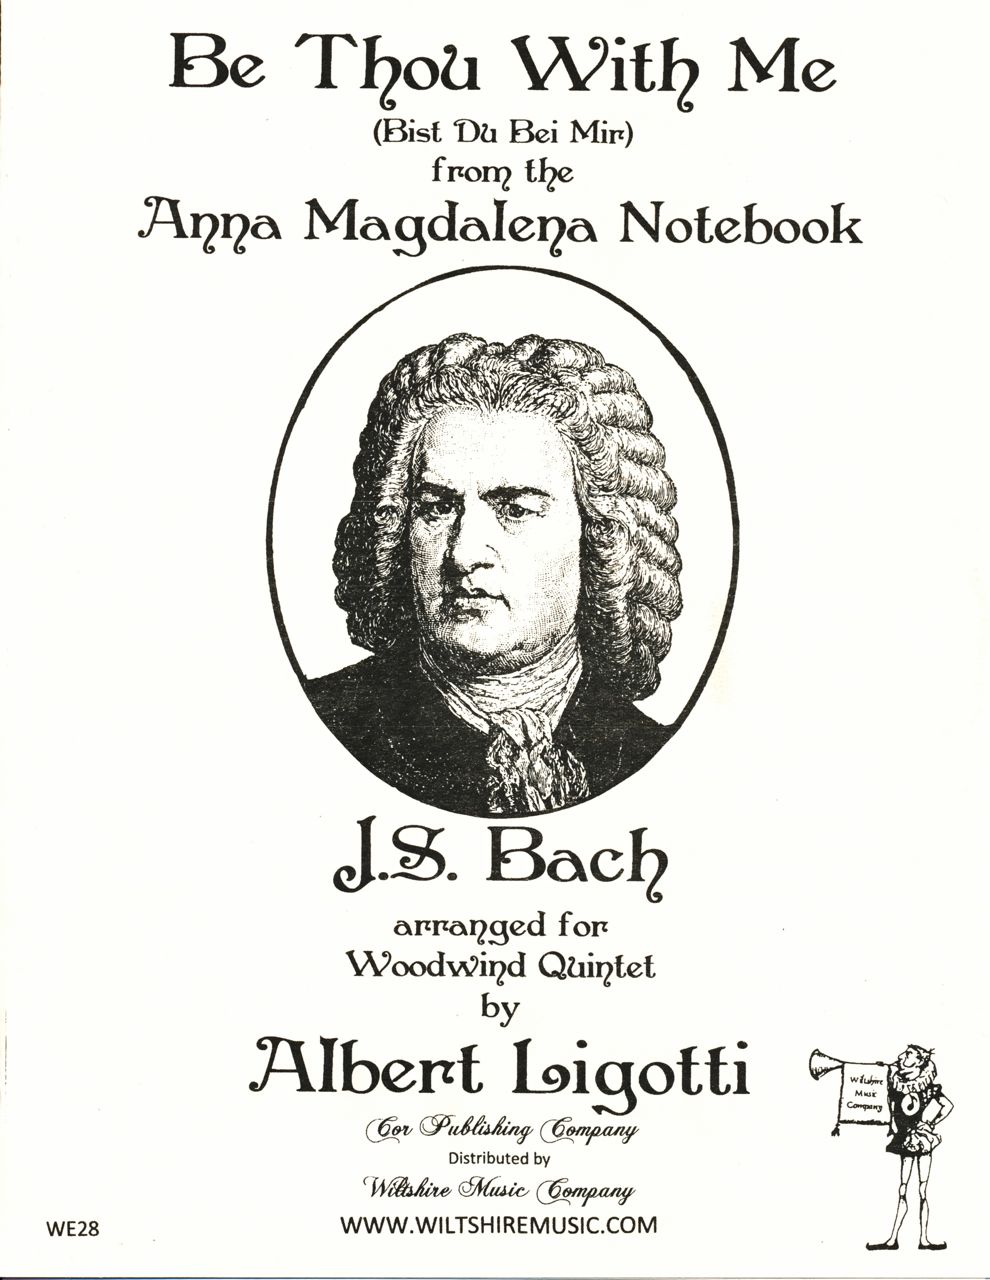 Be Thou With Me, J.S. Bach arr. A. Ligotti